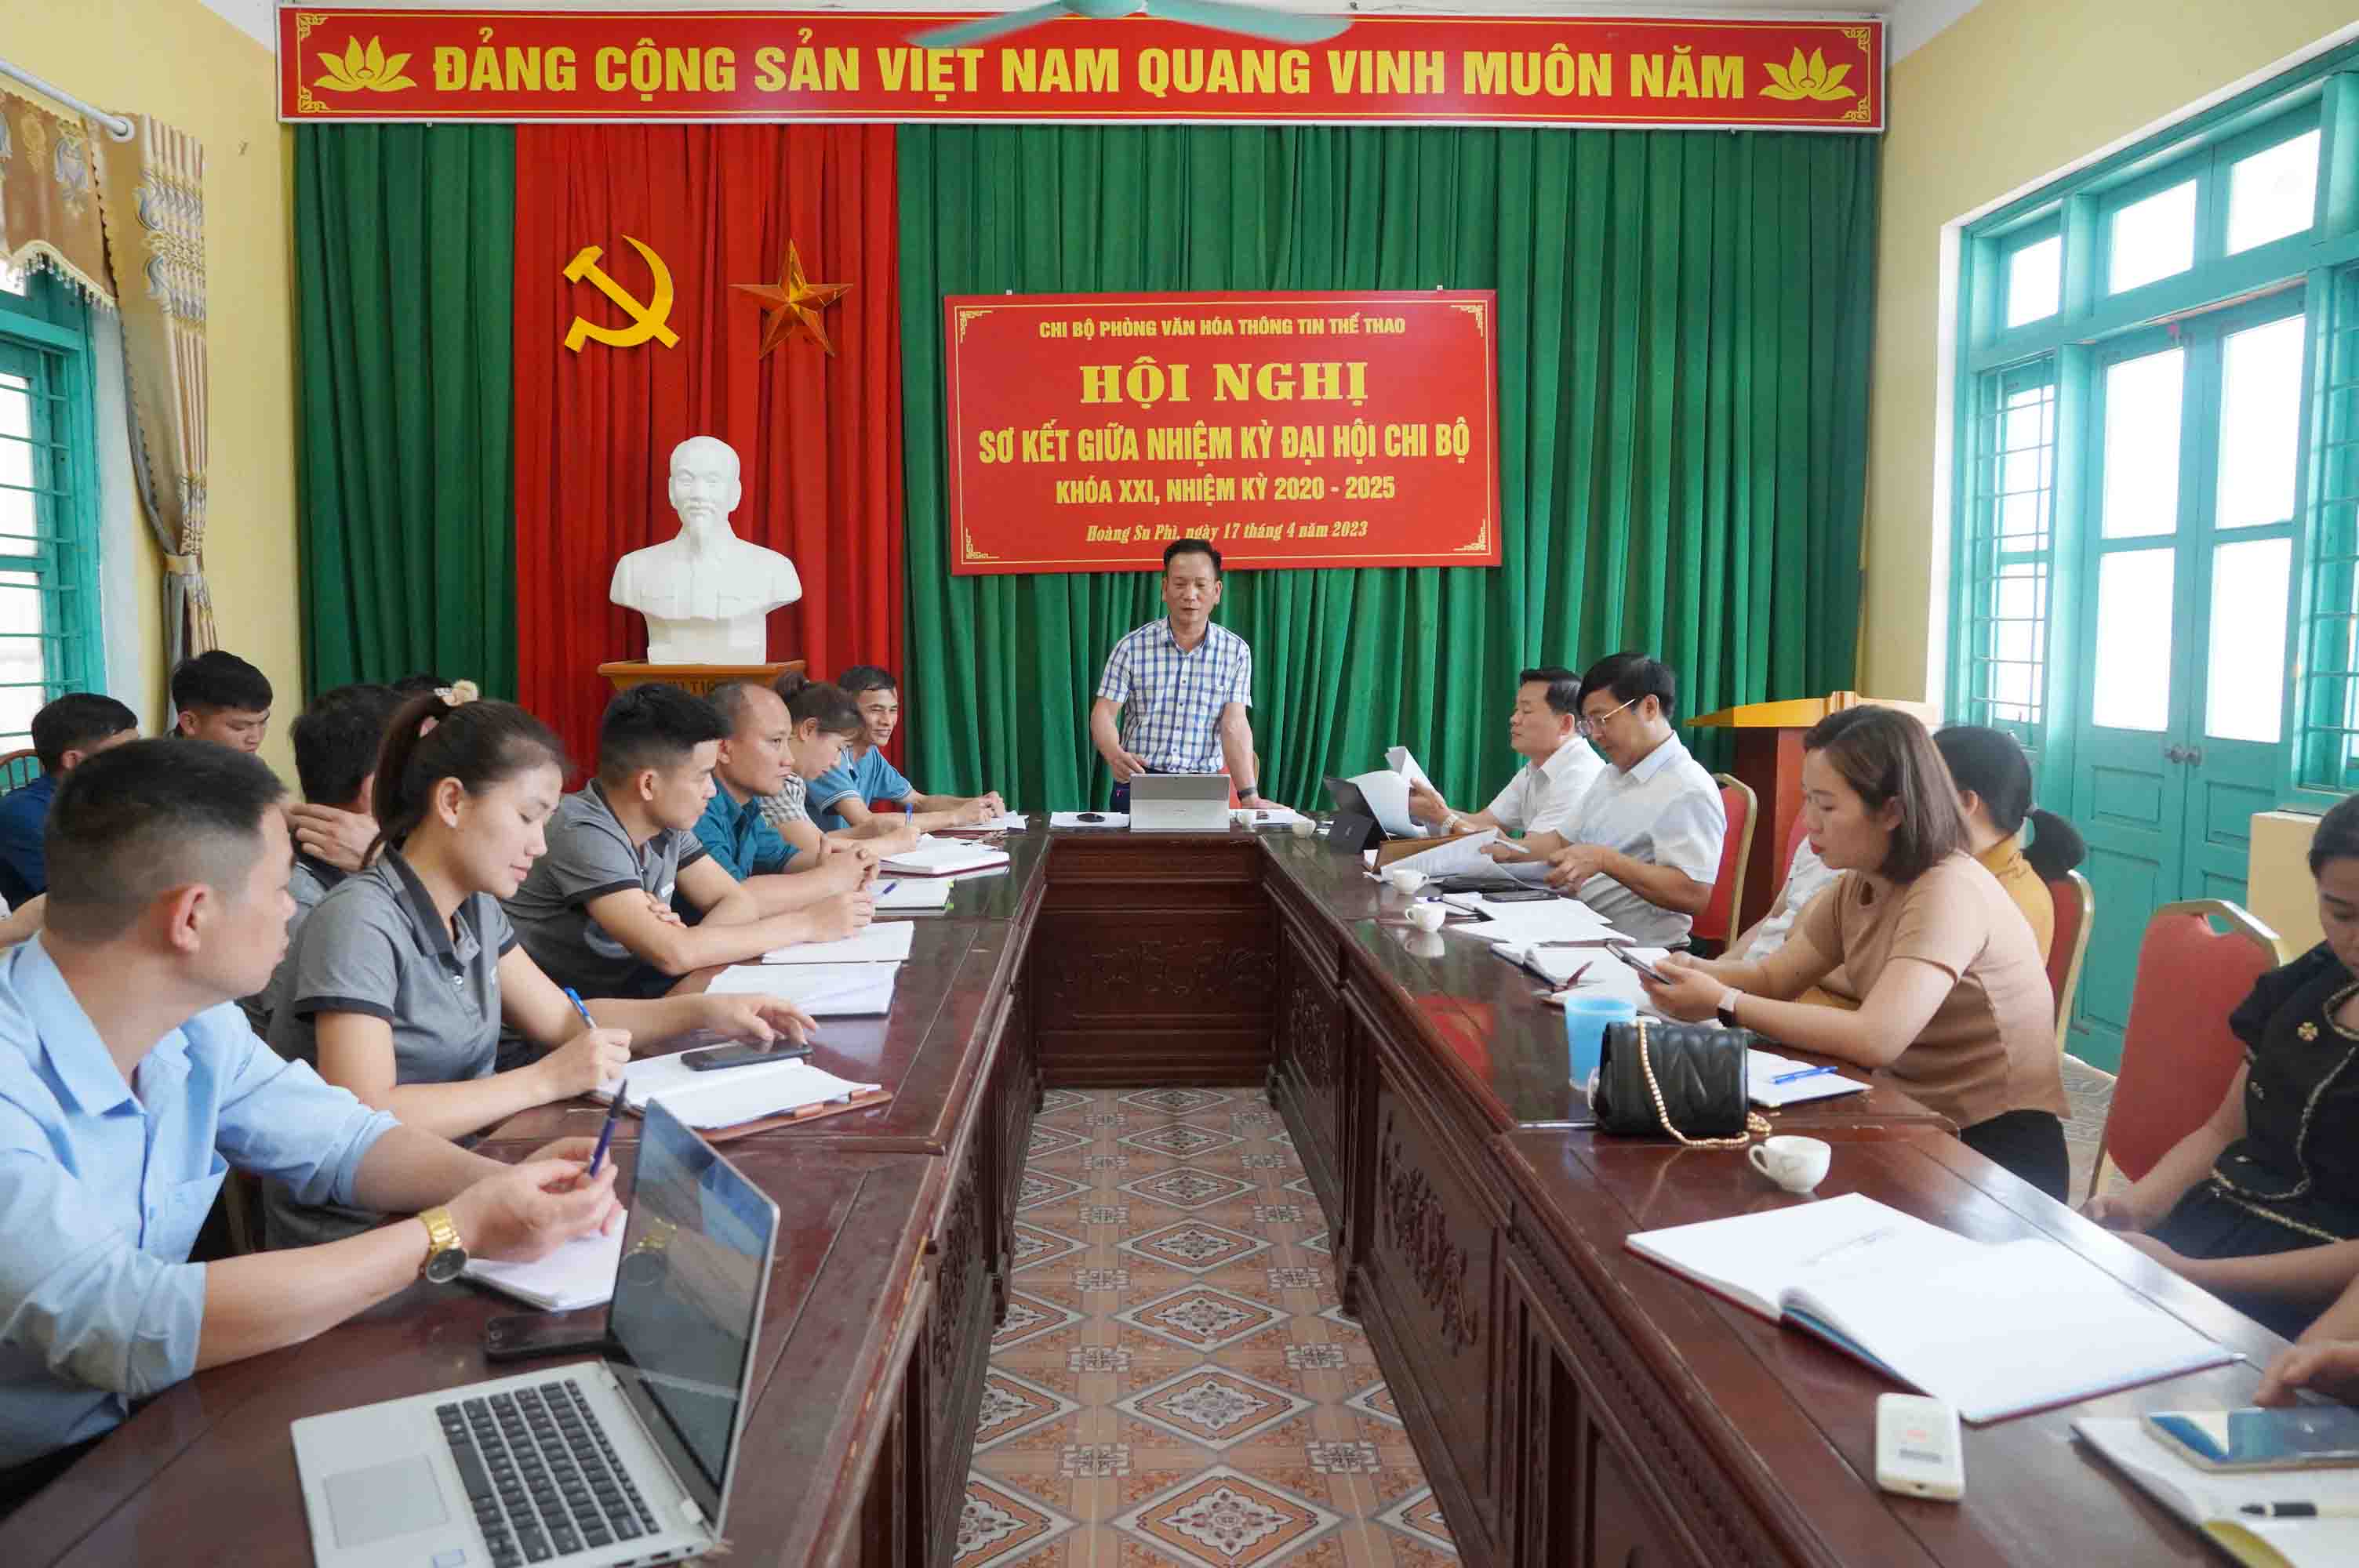 Chi bộ Phòng Văn hóa Thông Tin thể thao huyện Hoàng Su Phì  tổ chức Hội nghị sơ kết giữa nhiệm kỳ đại hội